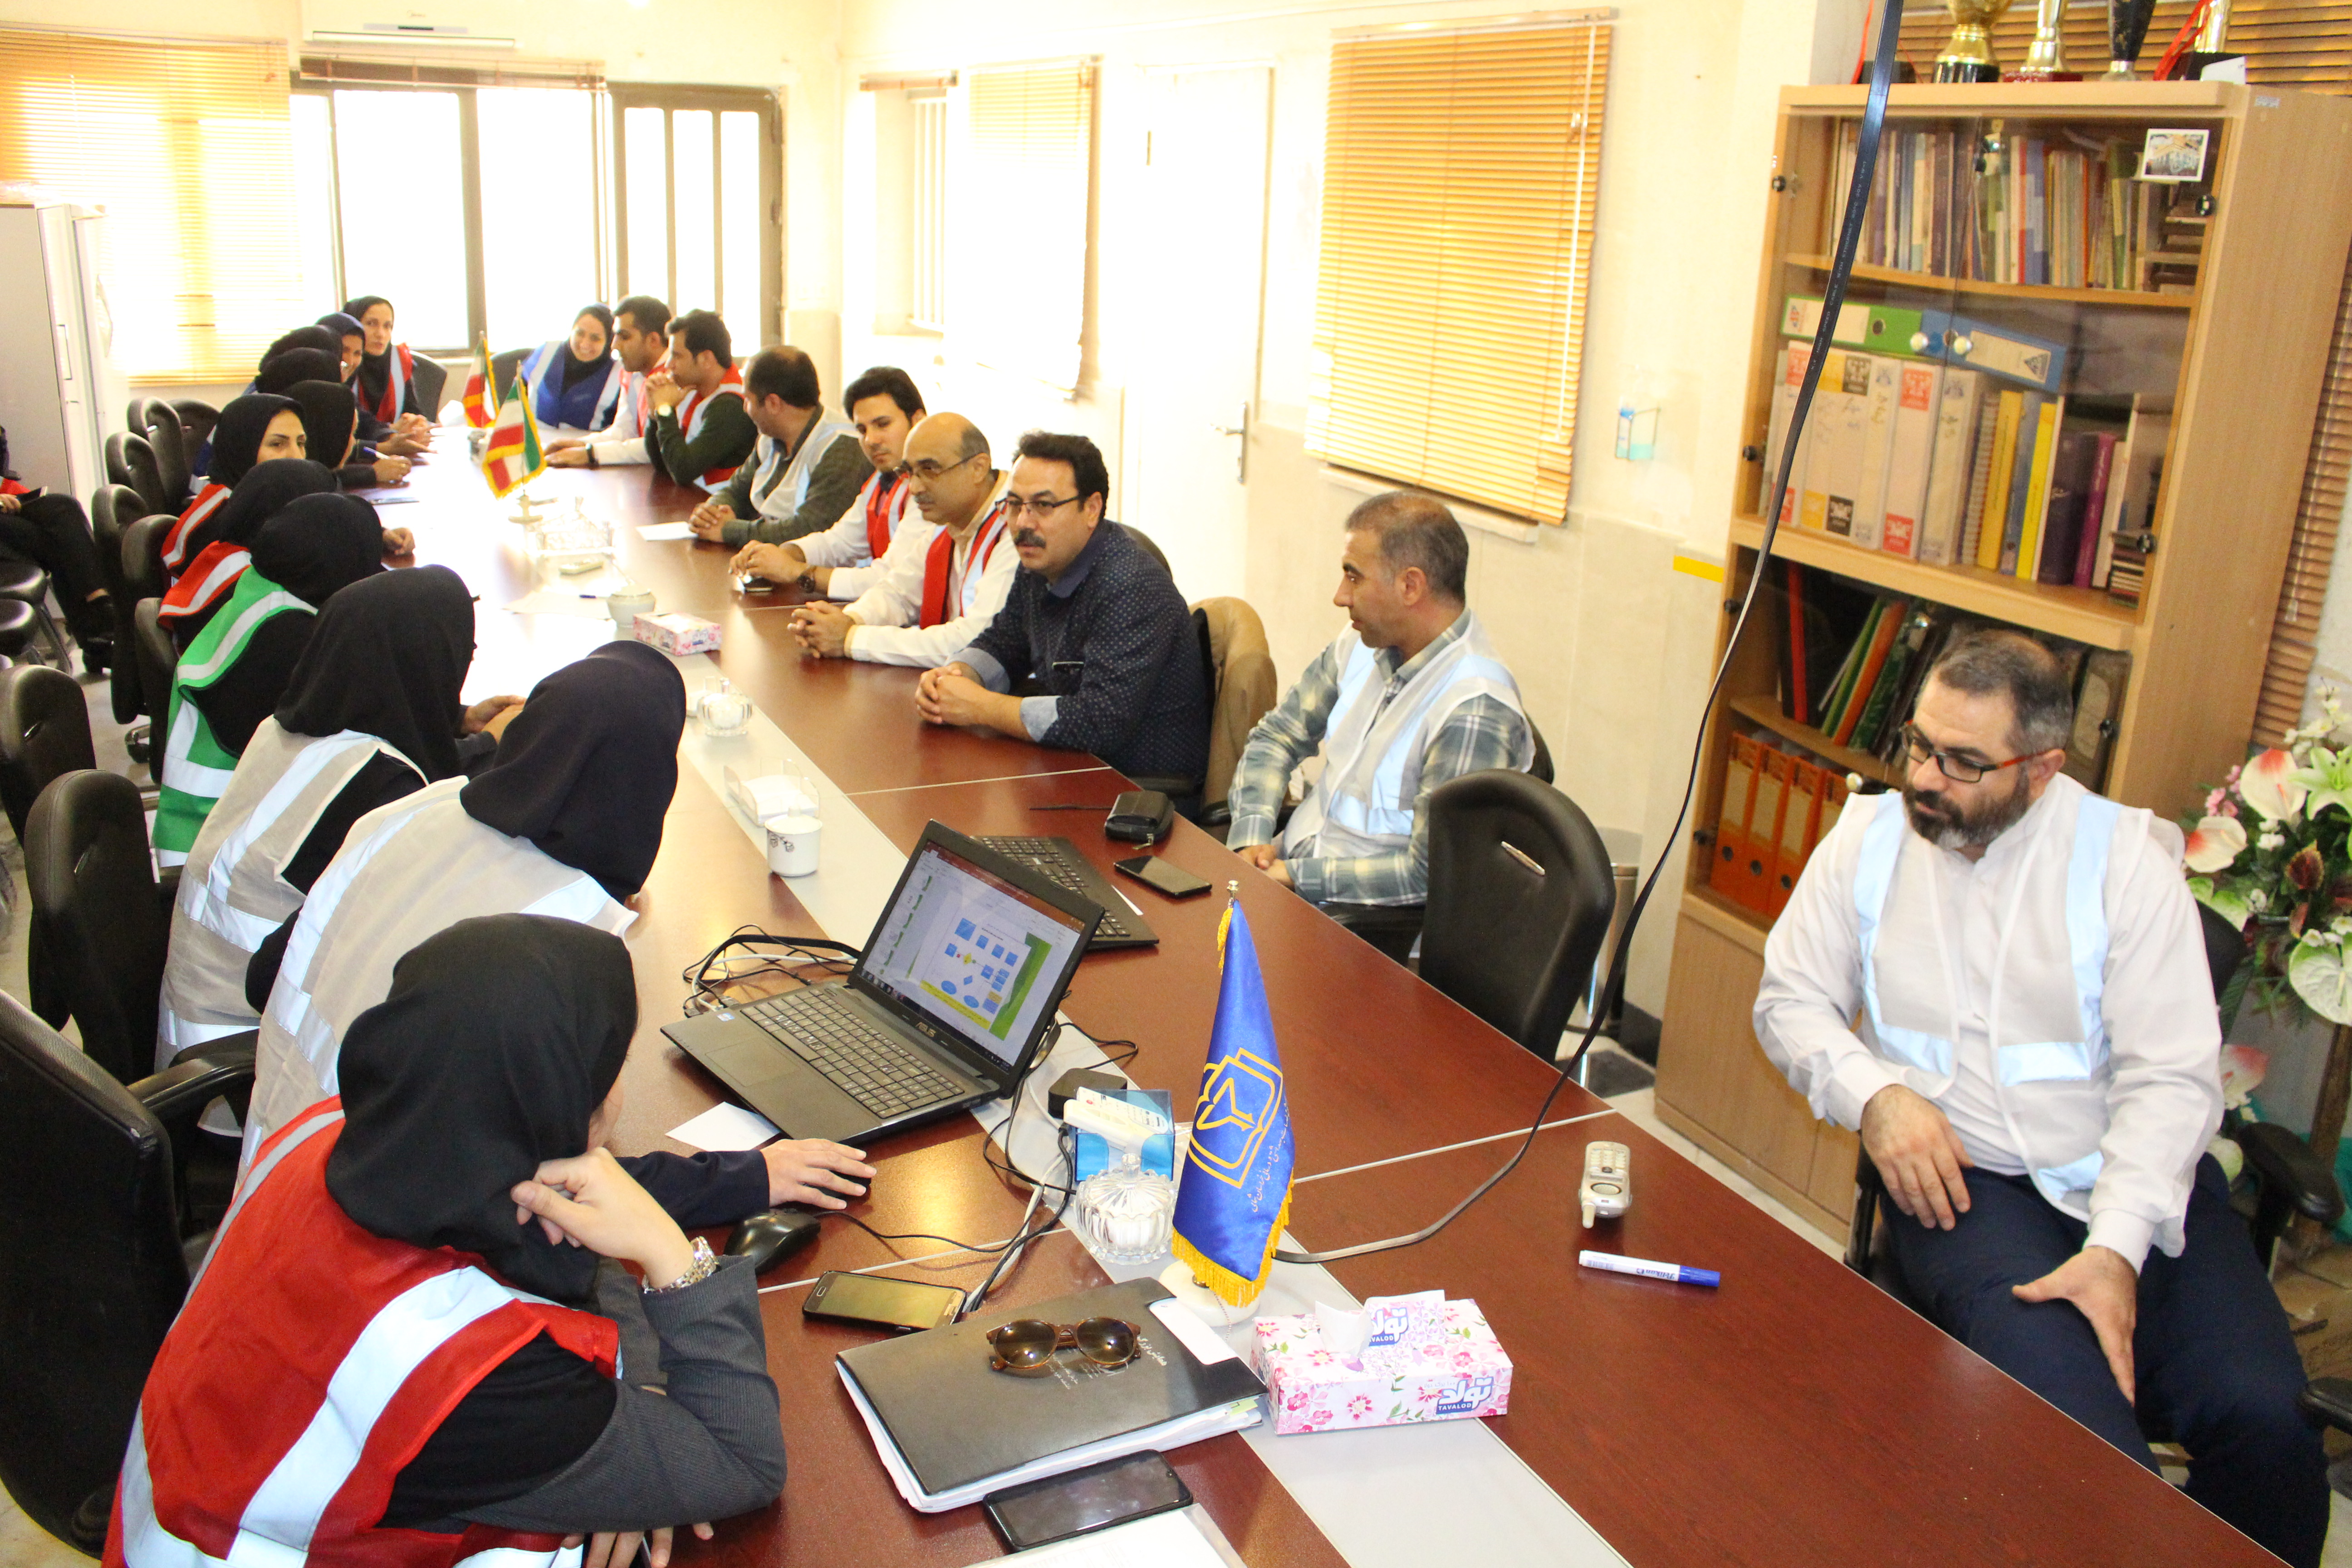 برگزاری تمرین فعالسازی سامانه HICS و فراخوان اعضا در بیمارستان امام علی (ع) بجنورد